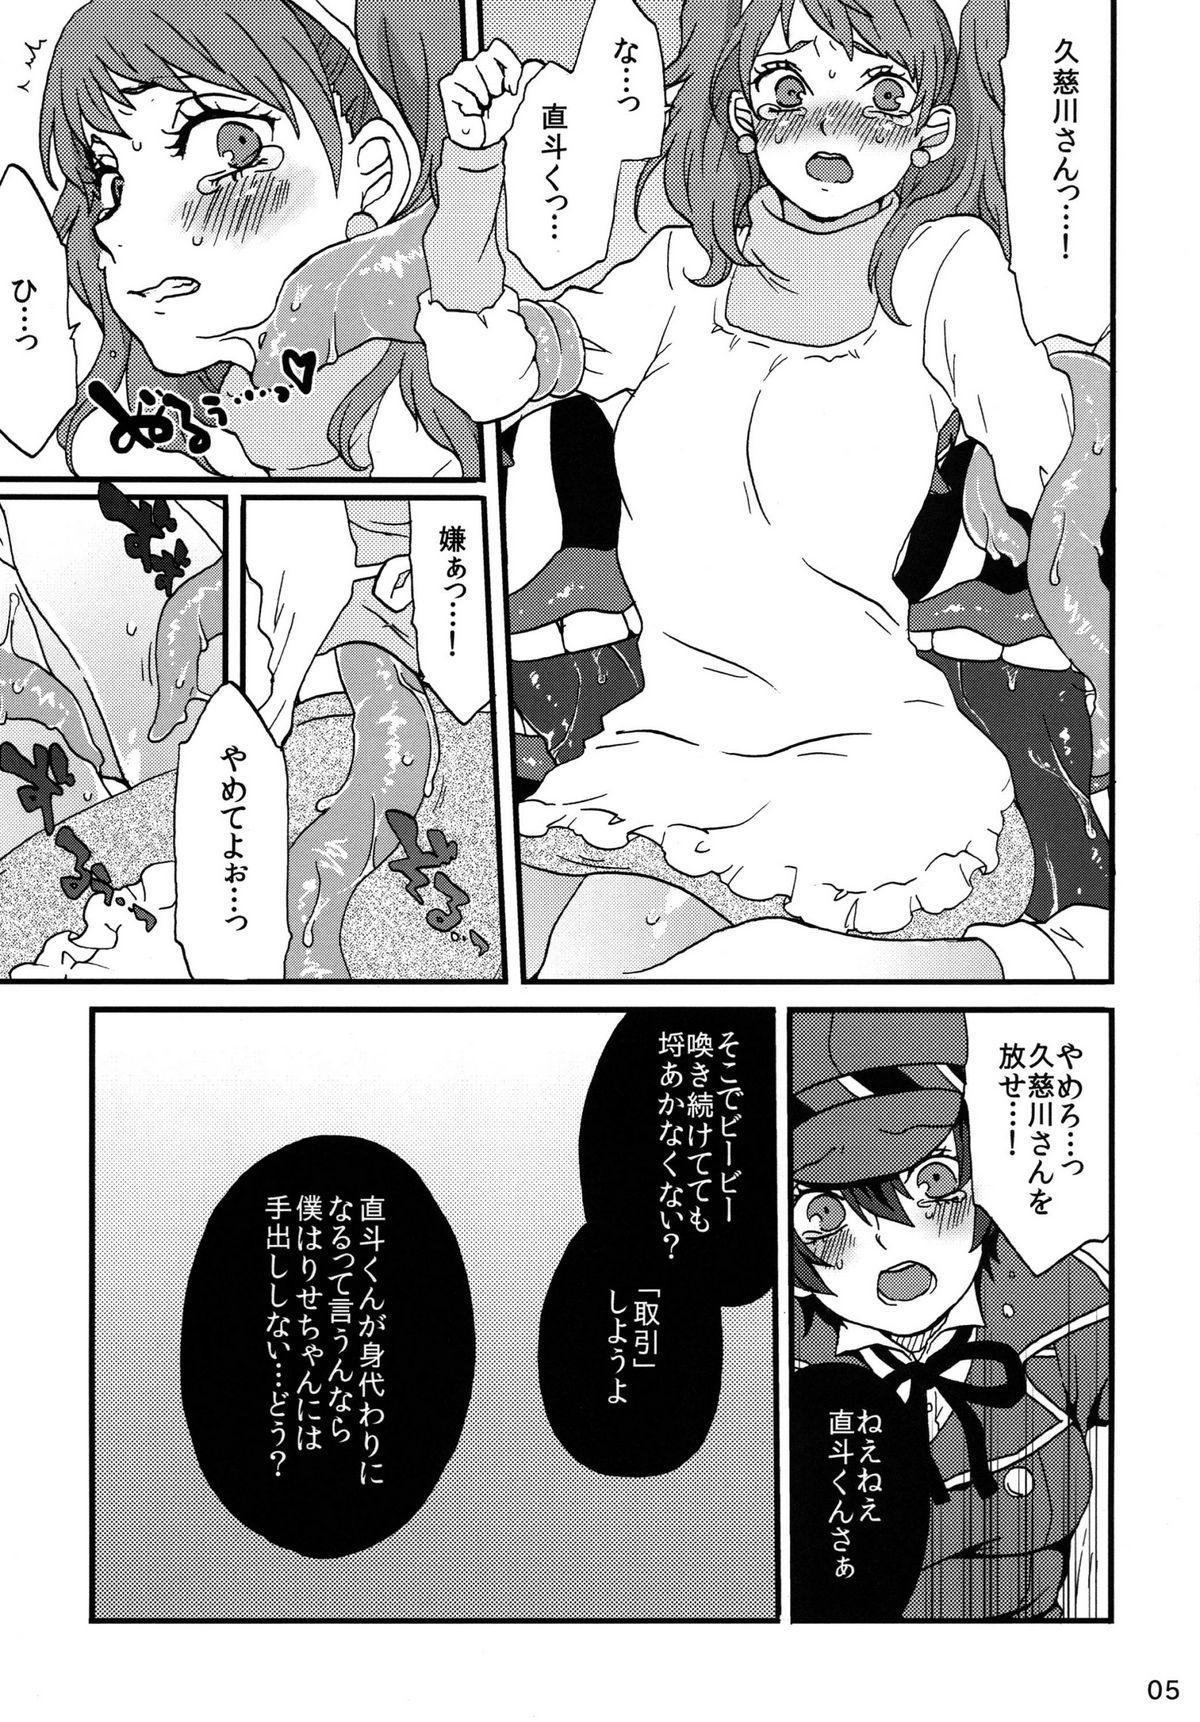 Dildos Koukishin ha Neko wo Korosu - Persona 4 Cock Suck - Page 5